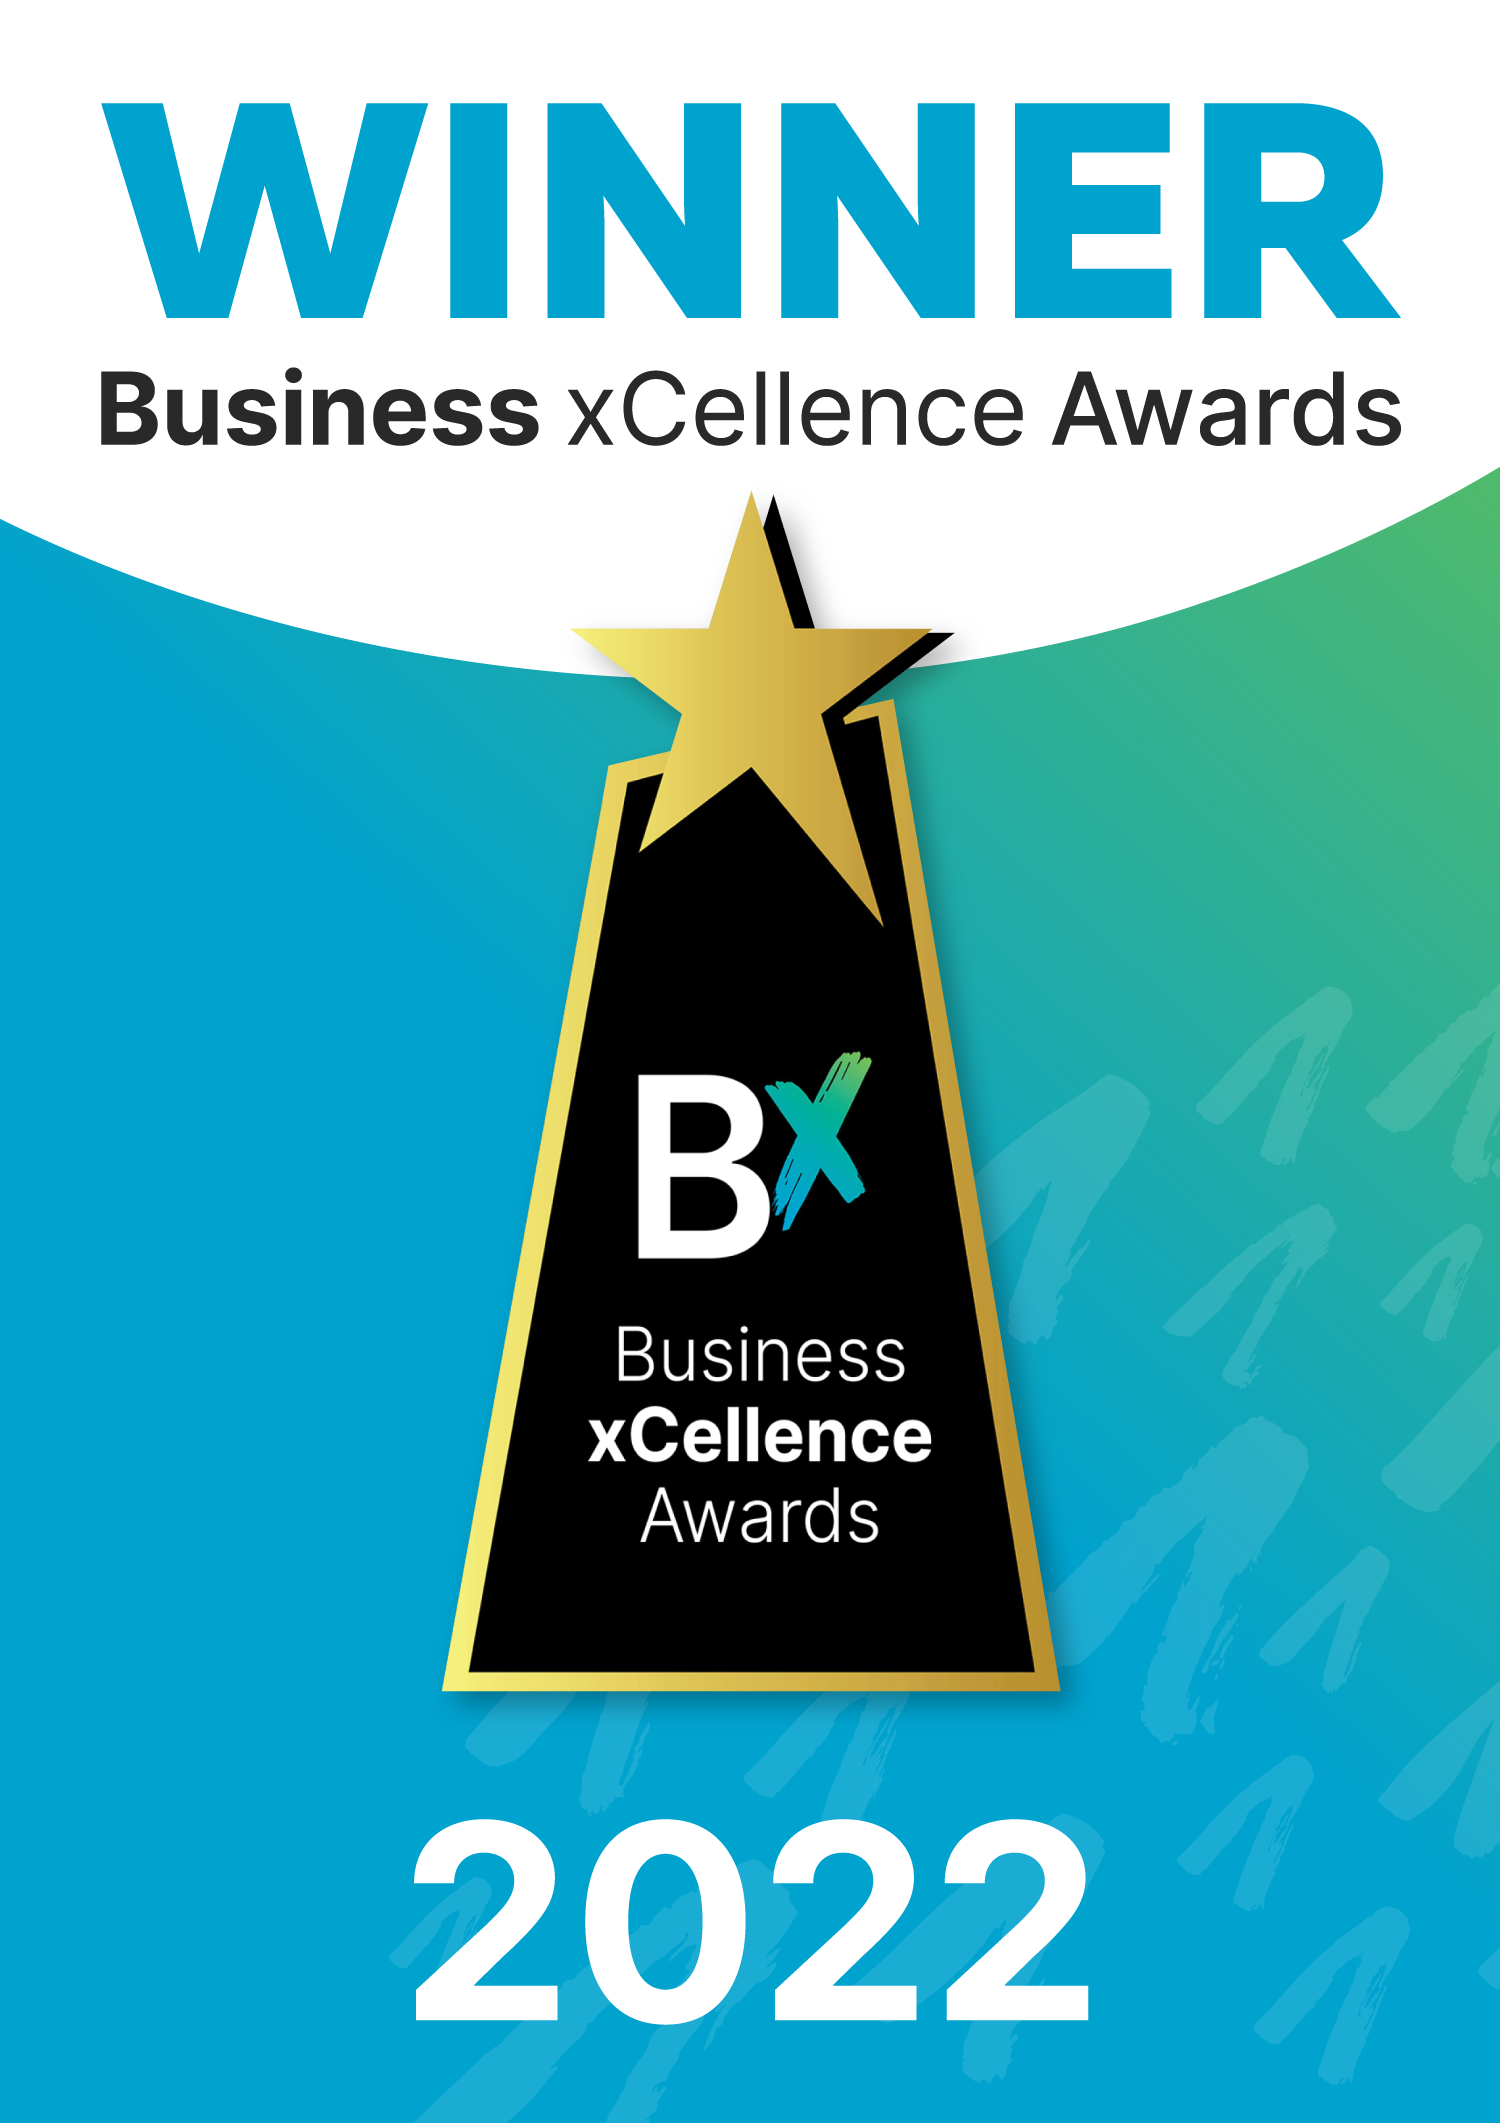 Winner Business XCellence Awards